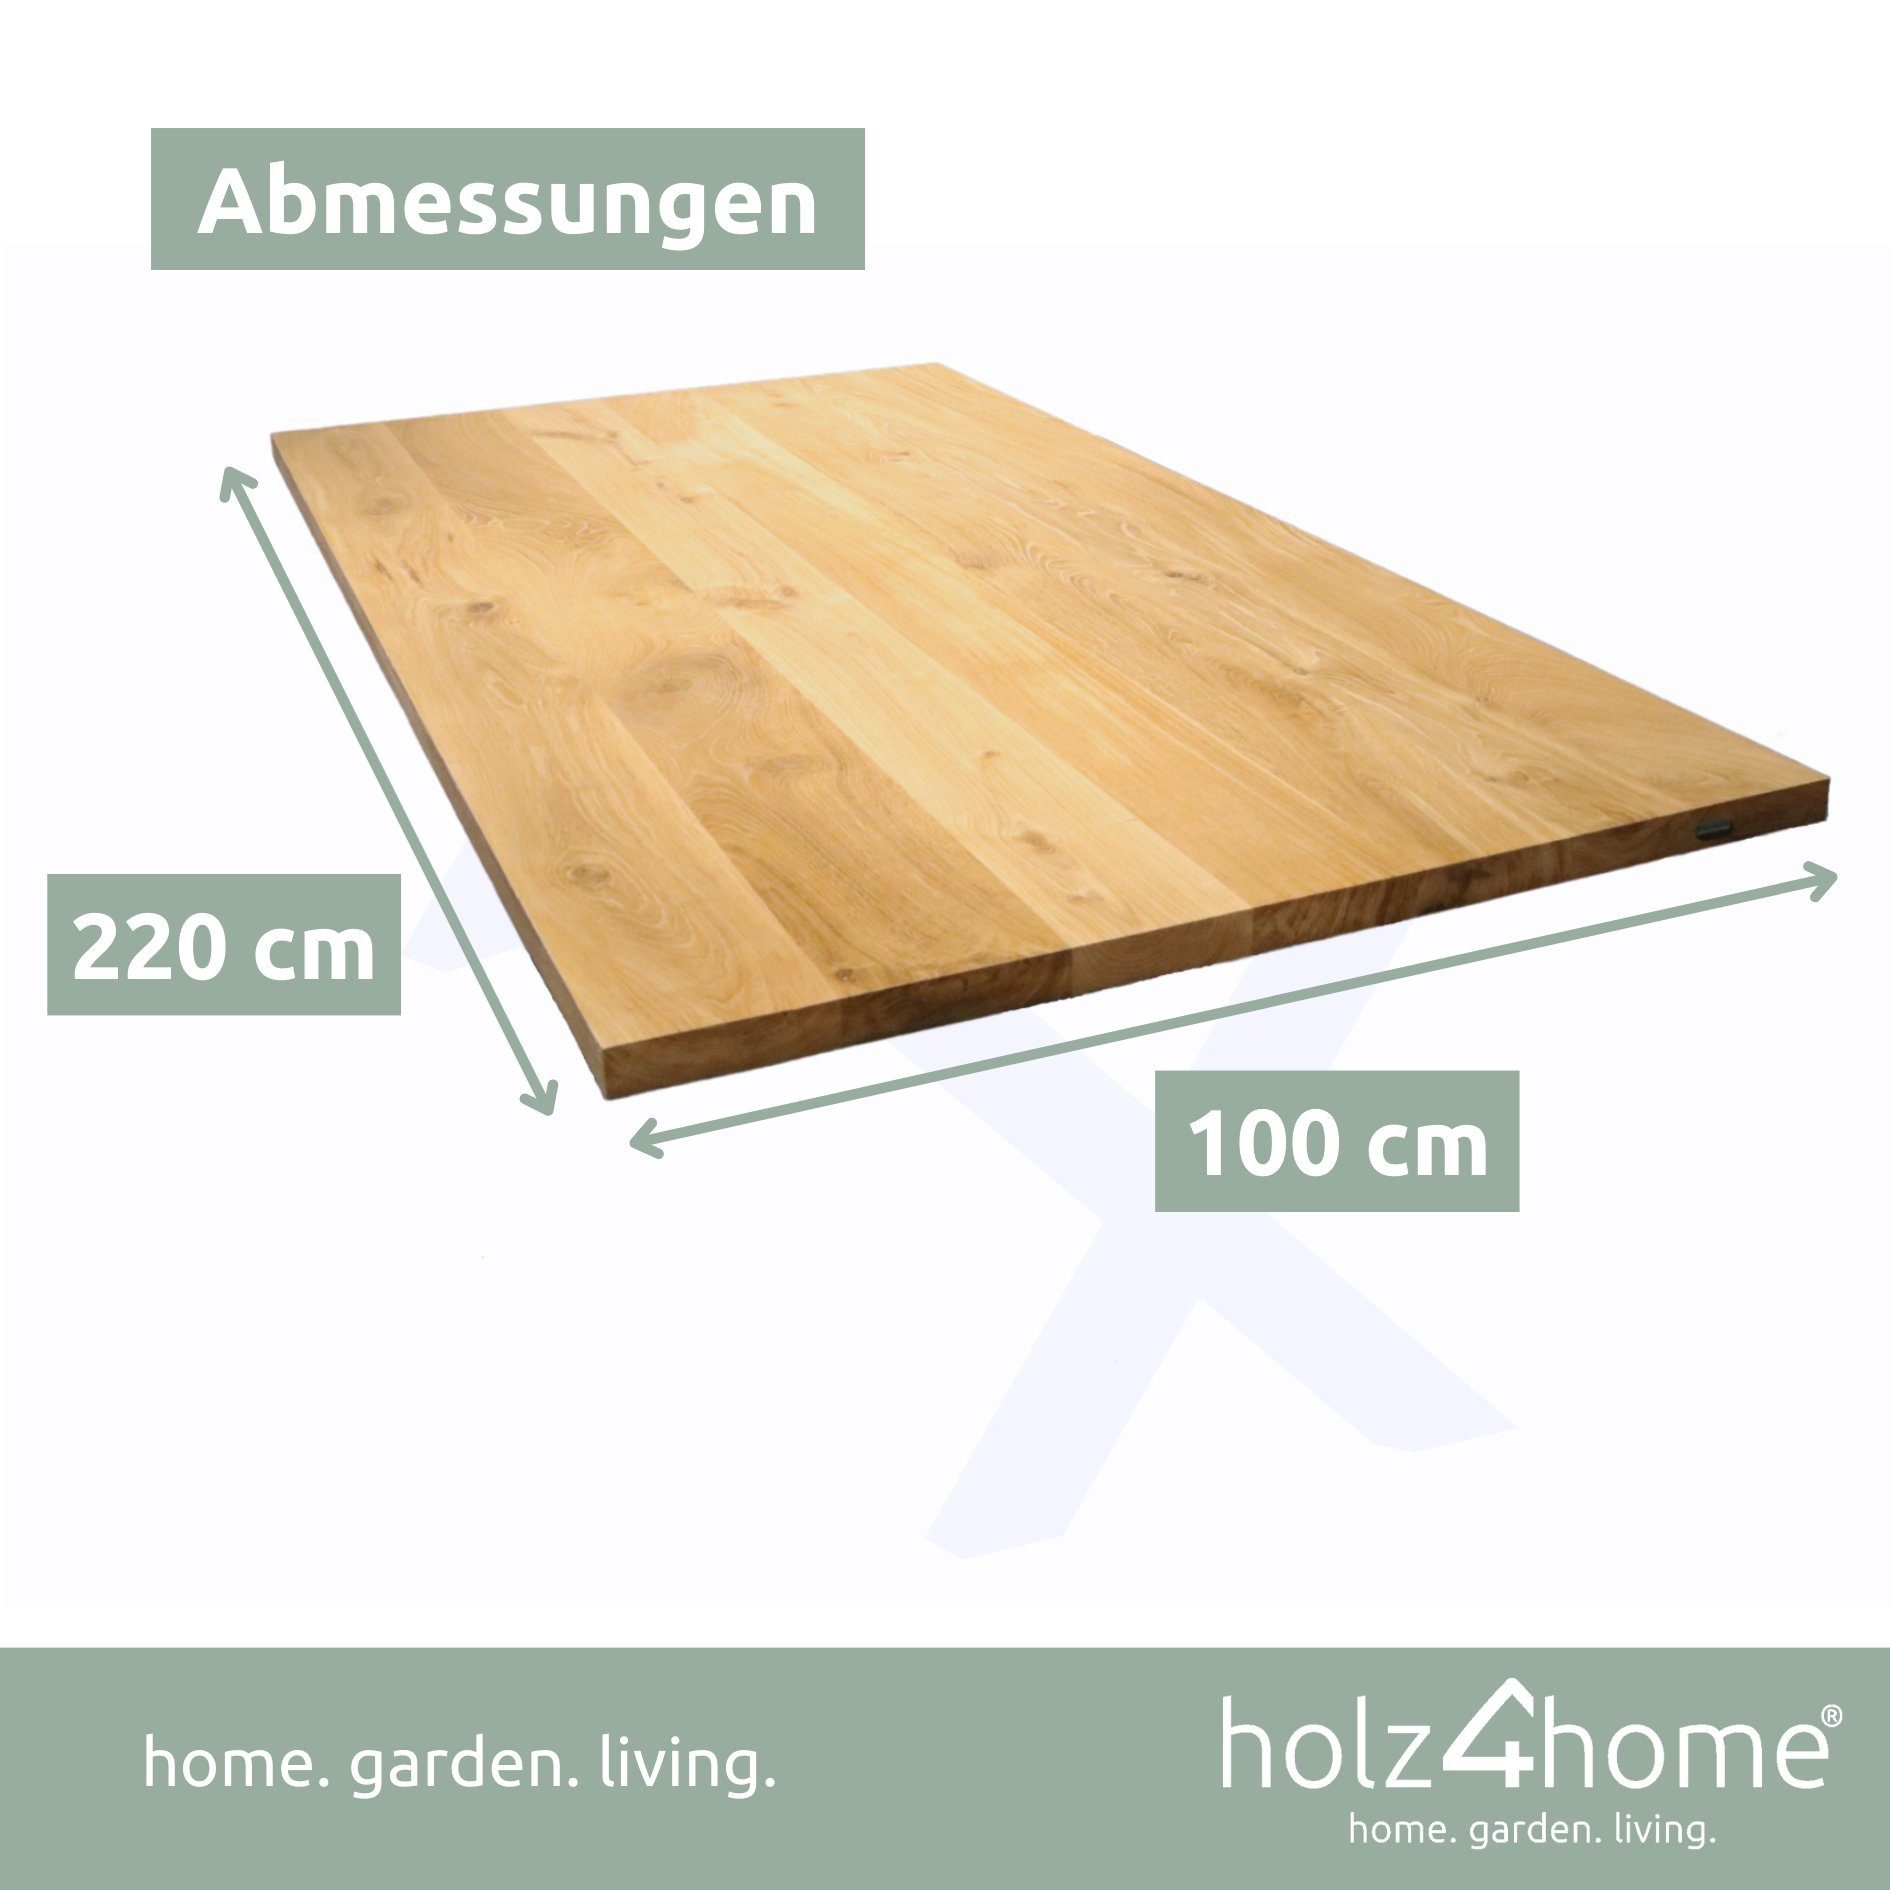 Esstischplatte holz4home Tischplatte Echtholz Eiche, Esstischplatte LxBxH, 220x100x4cm